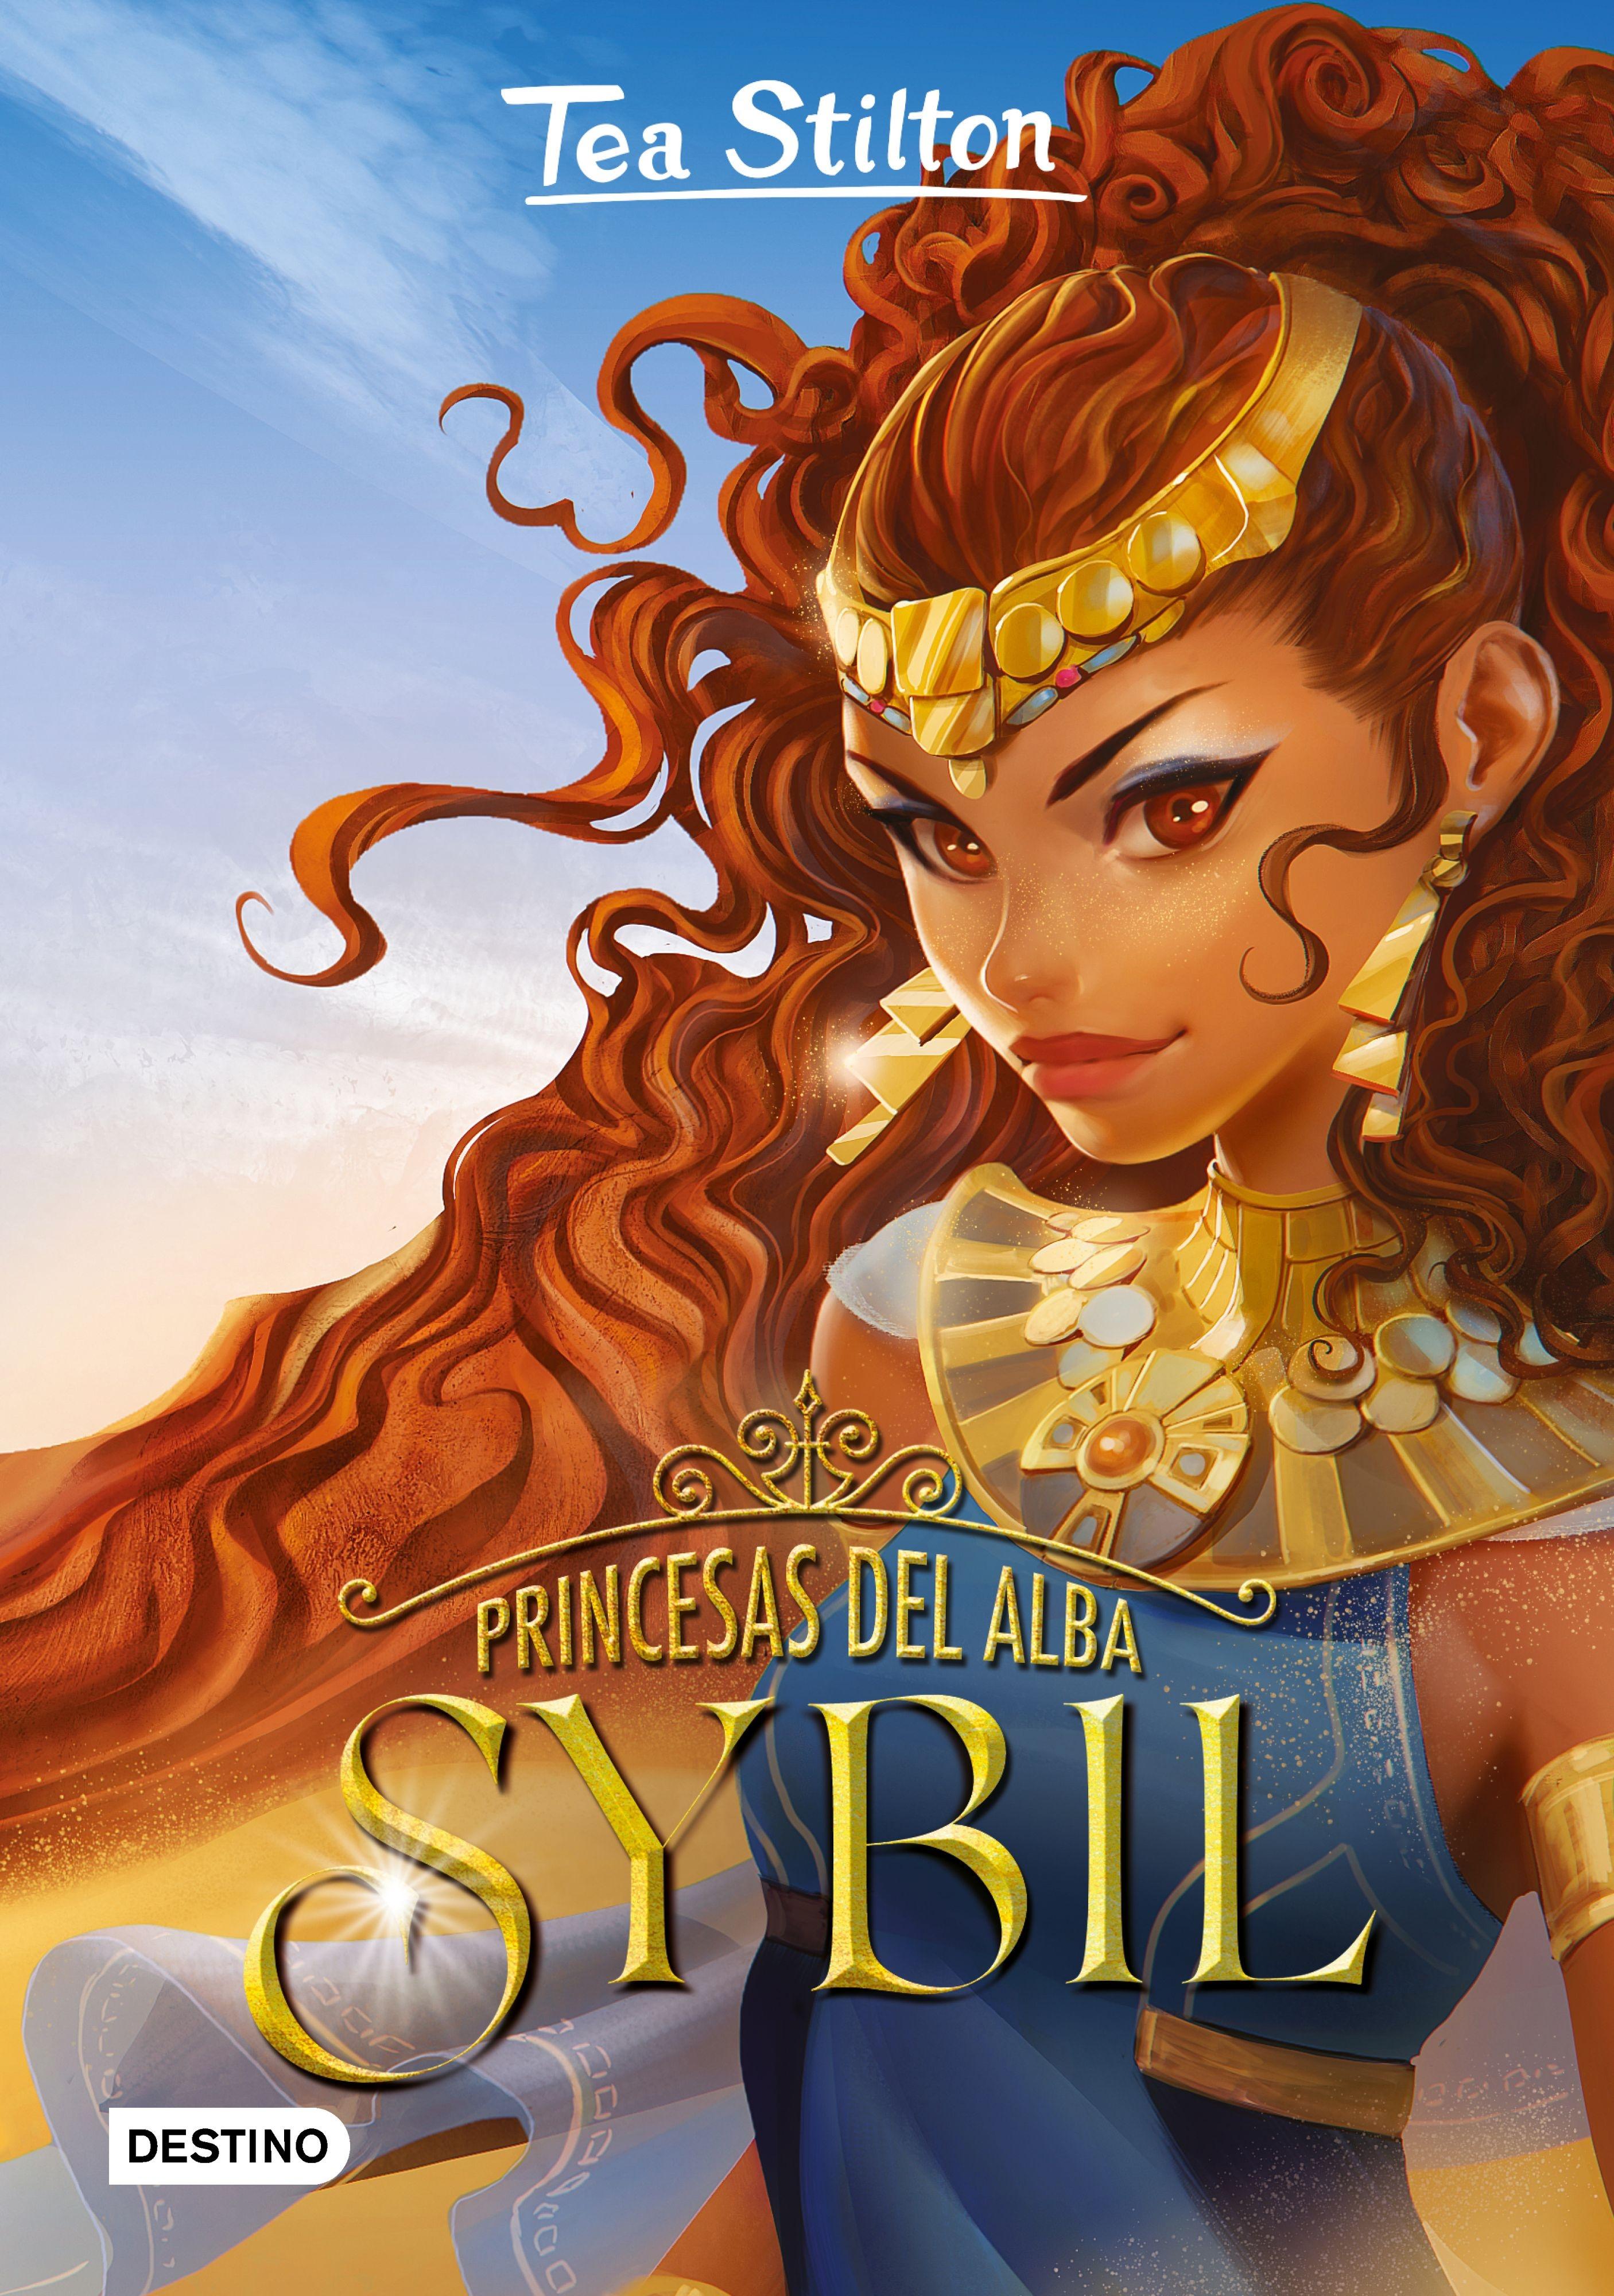 Princesas del Alba. Sybil. 